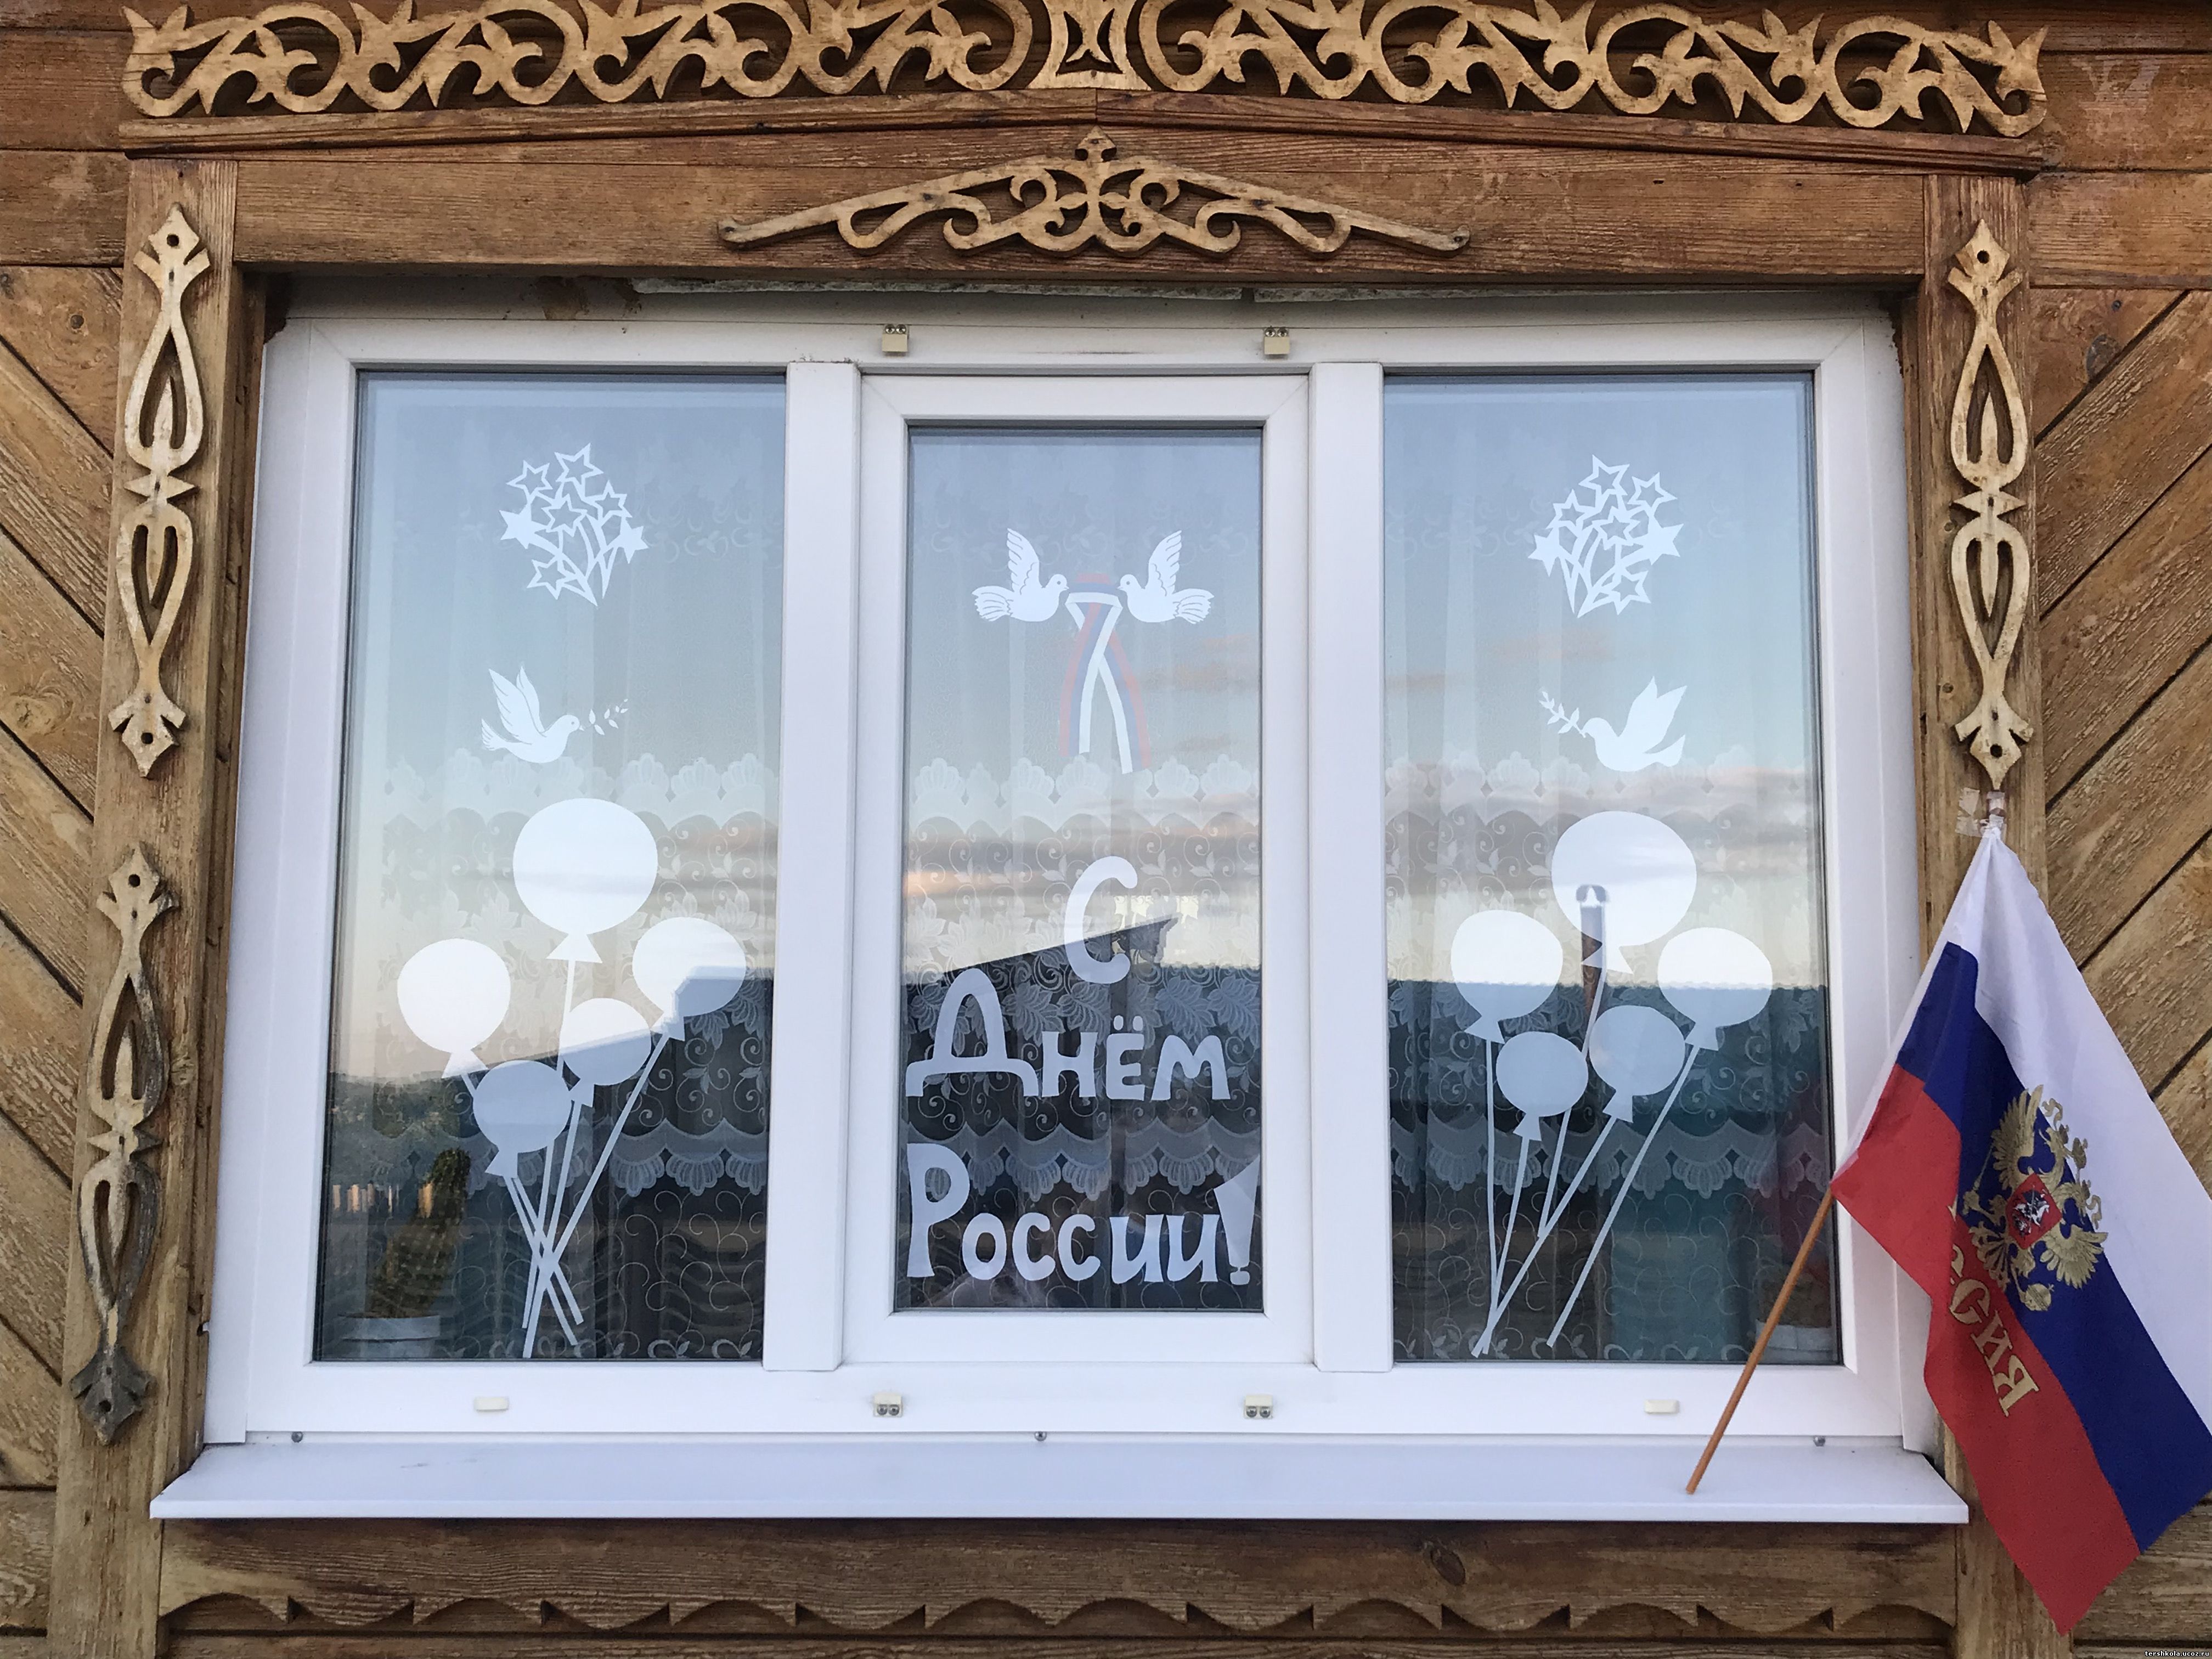 окна россии оформление фото